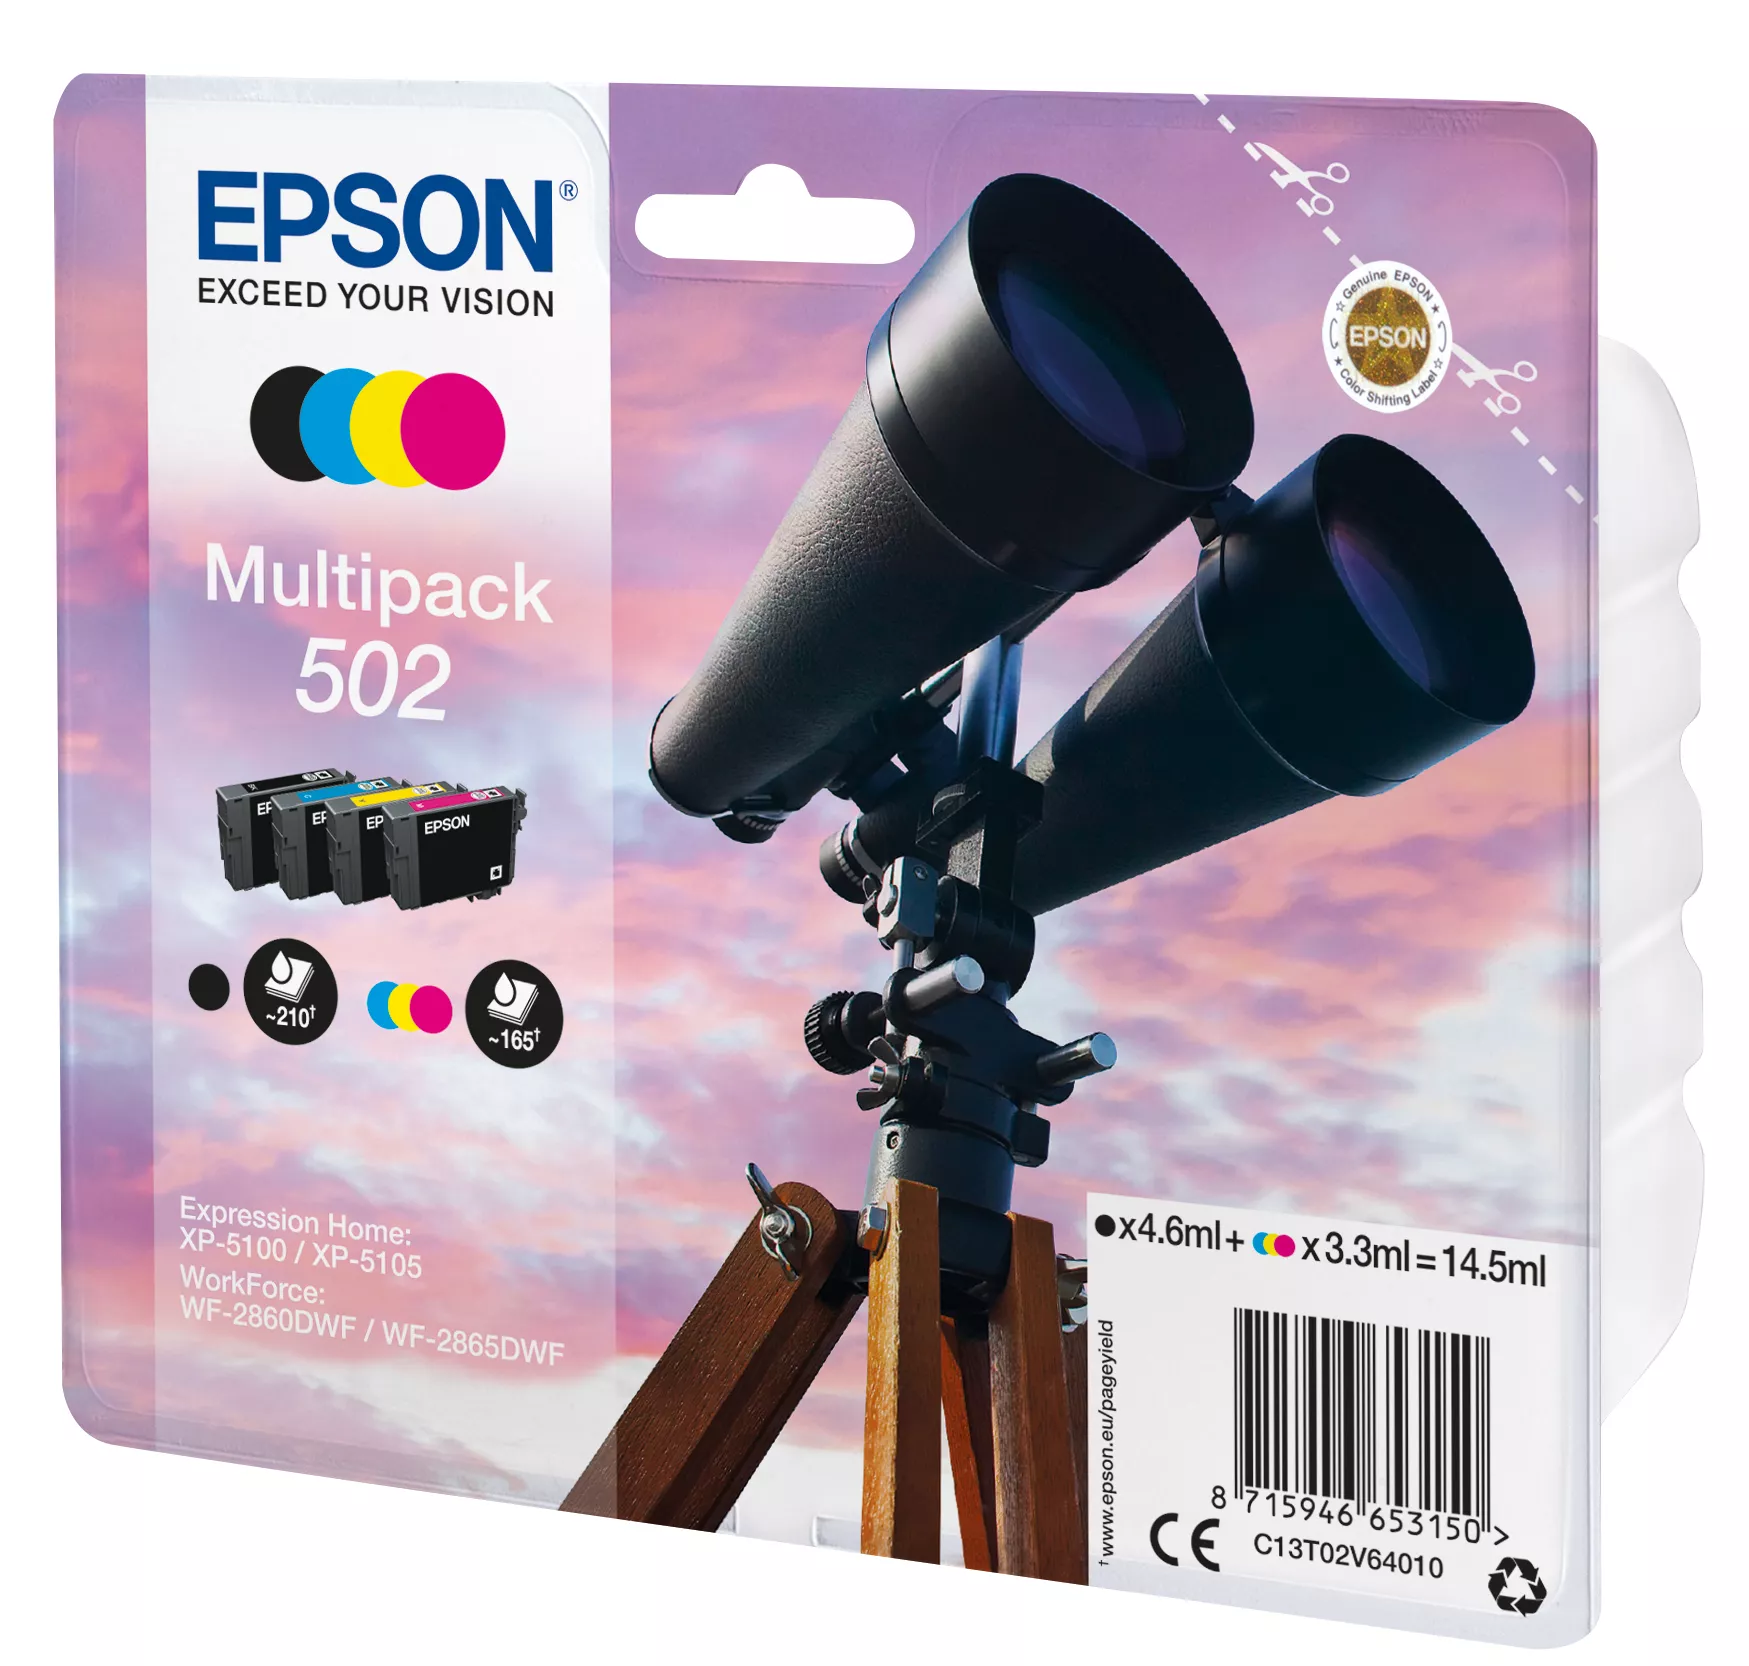 Vente EPSON Multipack 4-colours 502 Ink Epson au meilleur prix - visuel 2